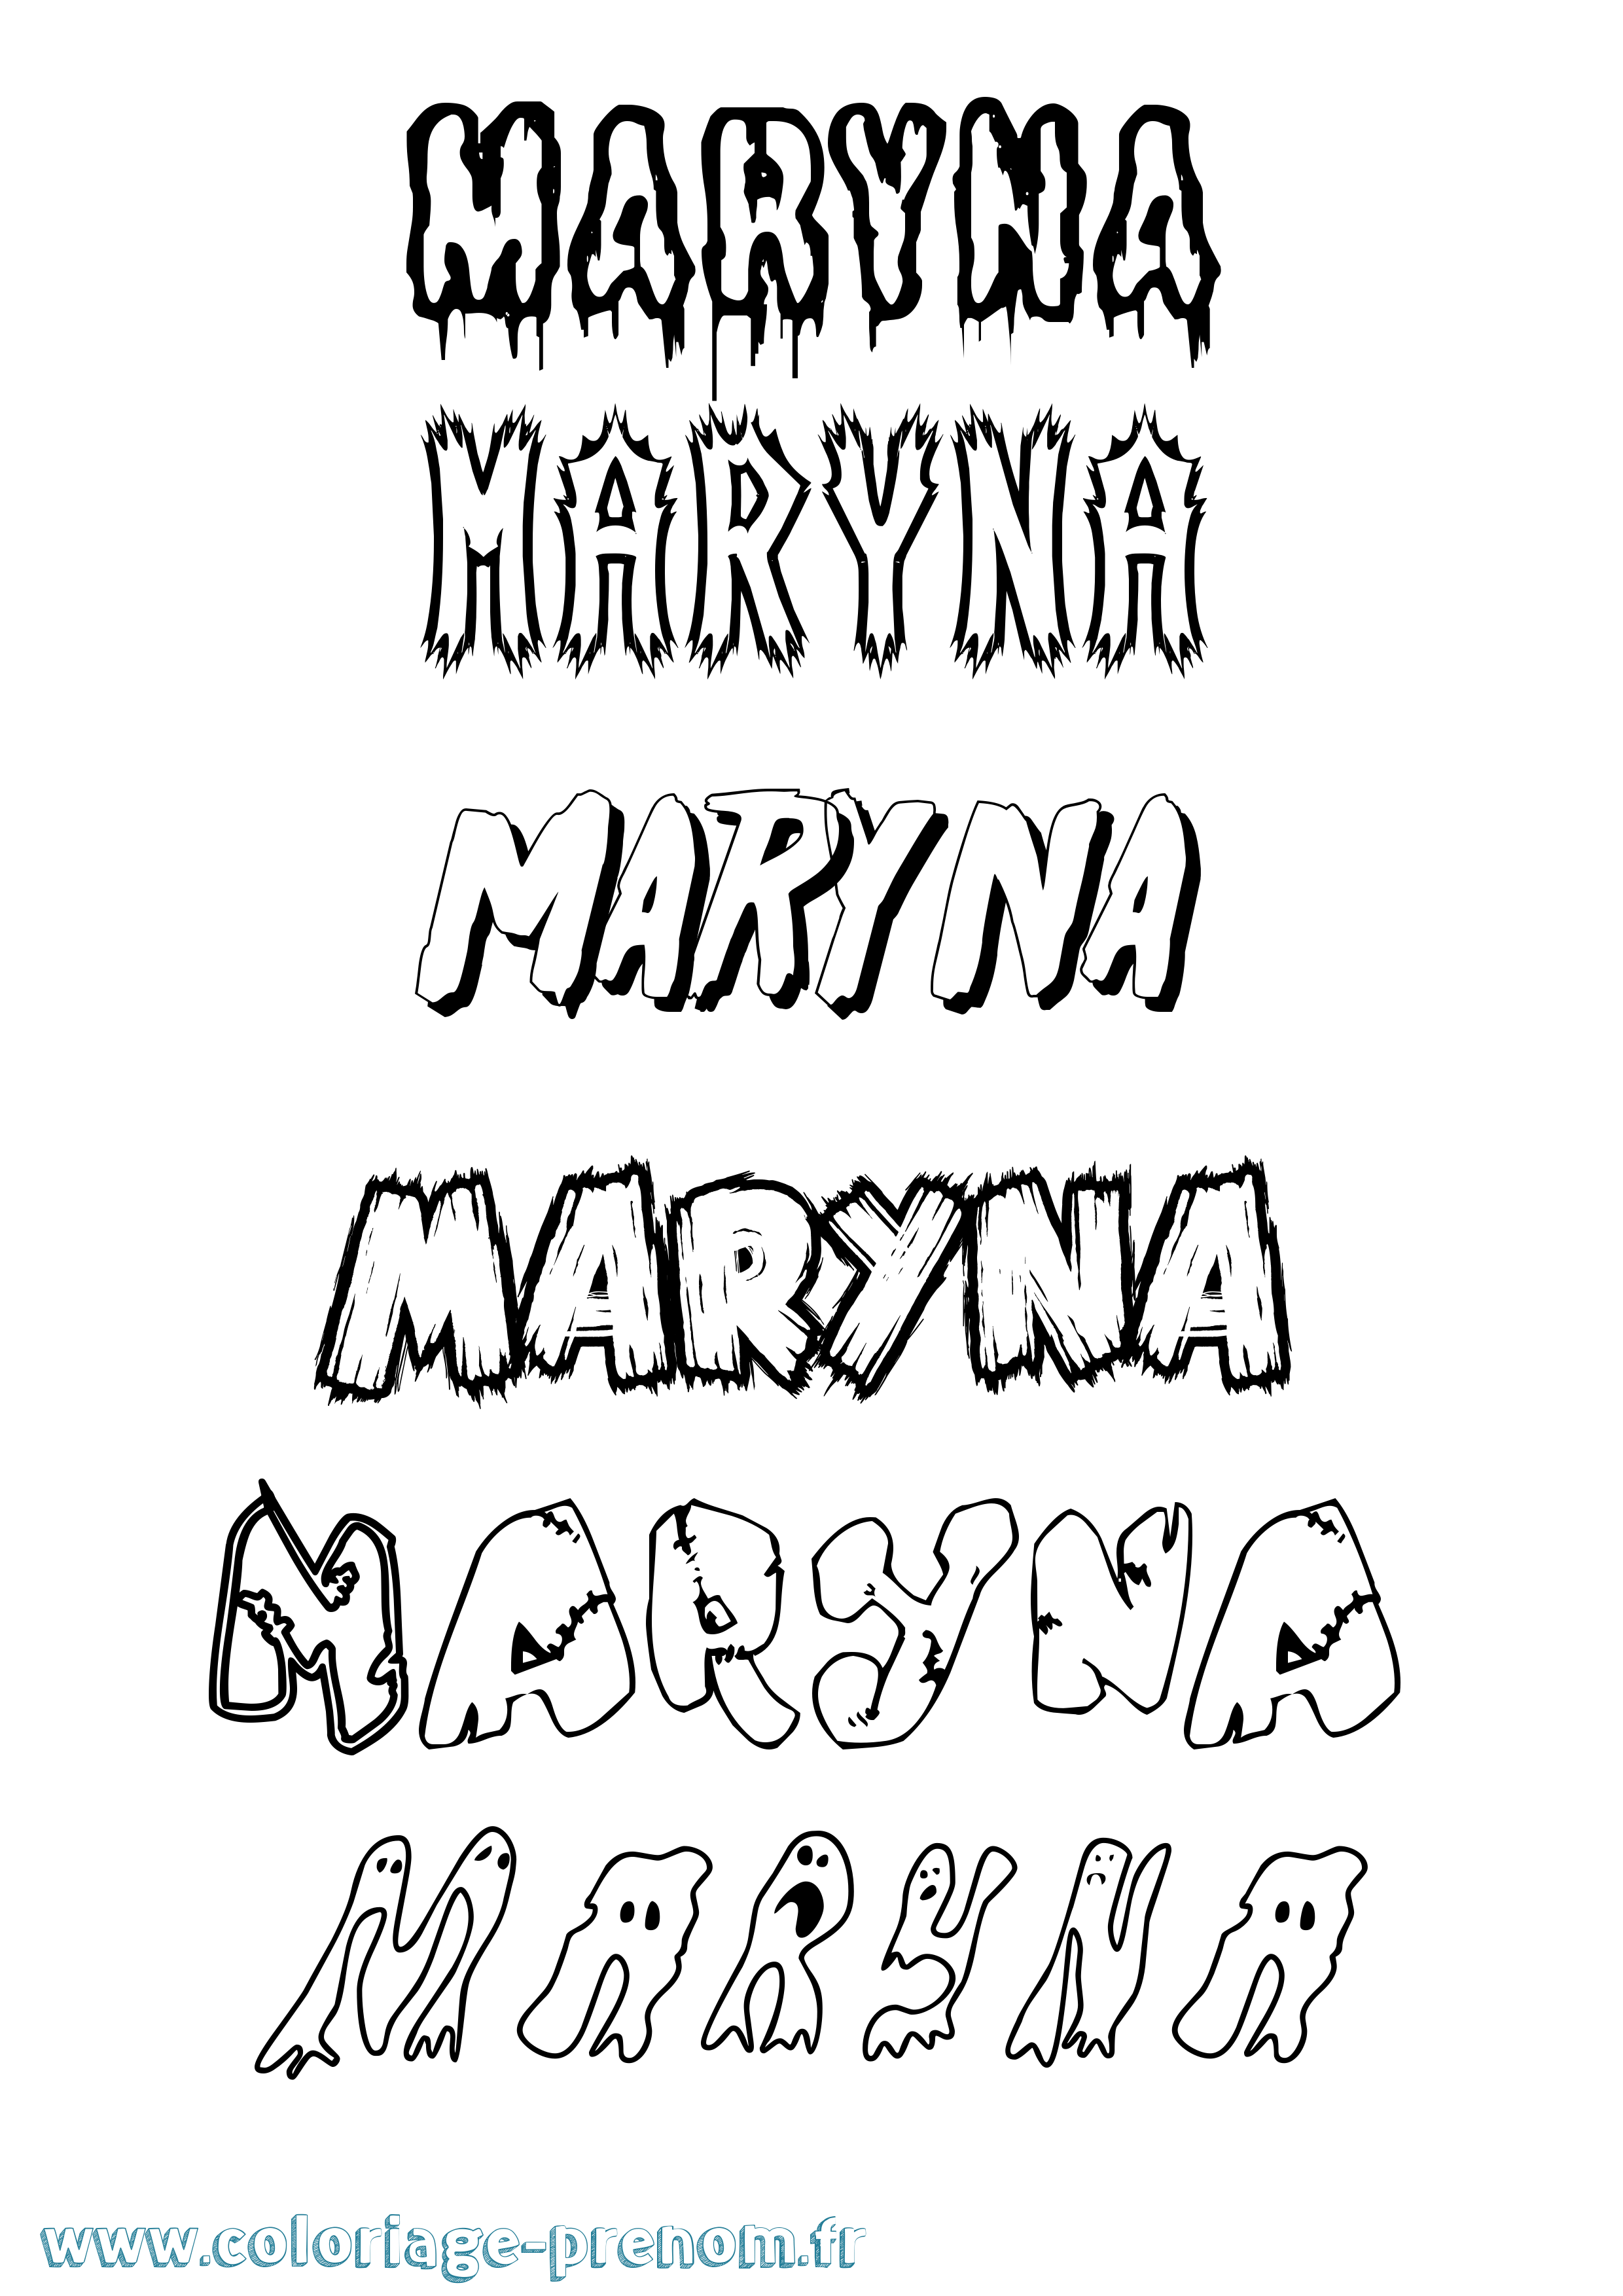 Coloriage prénom Maryna Frisson